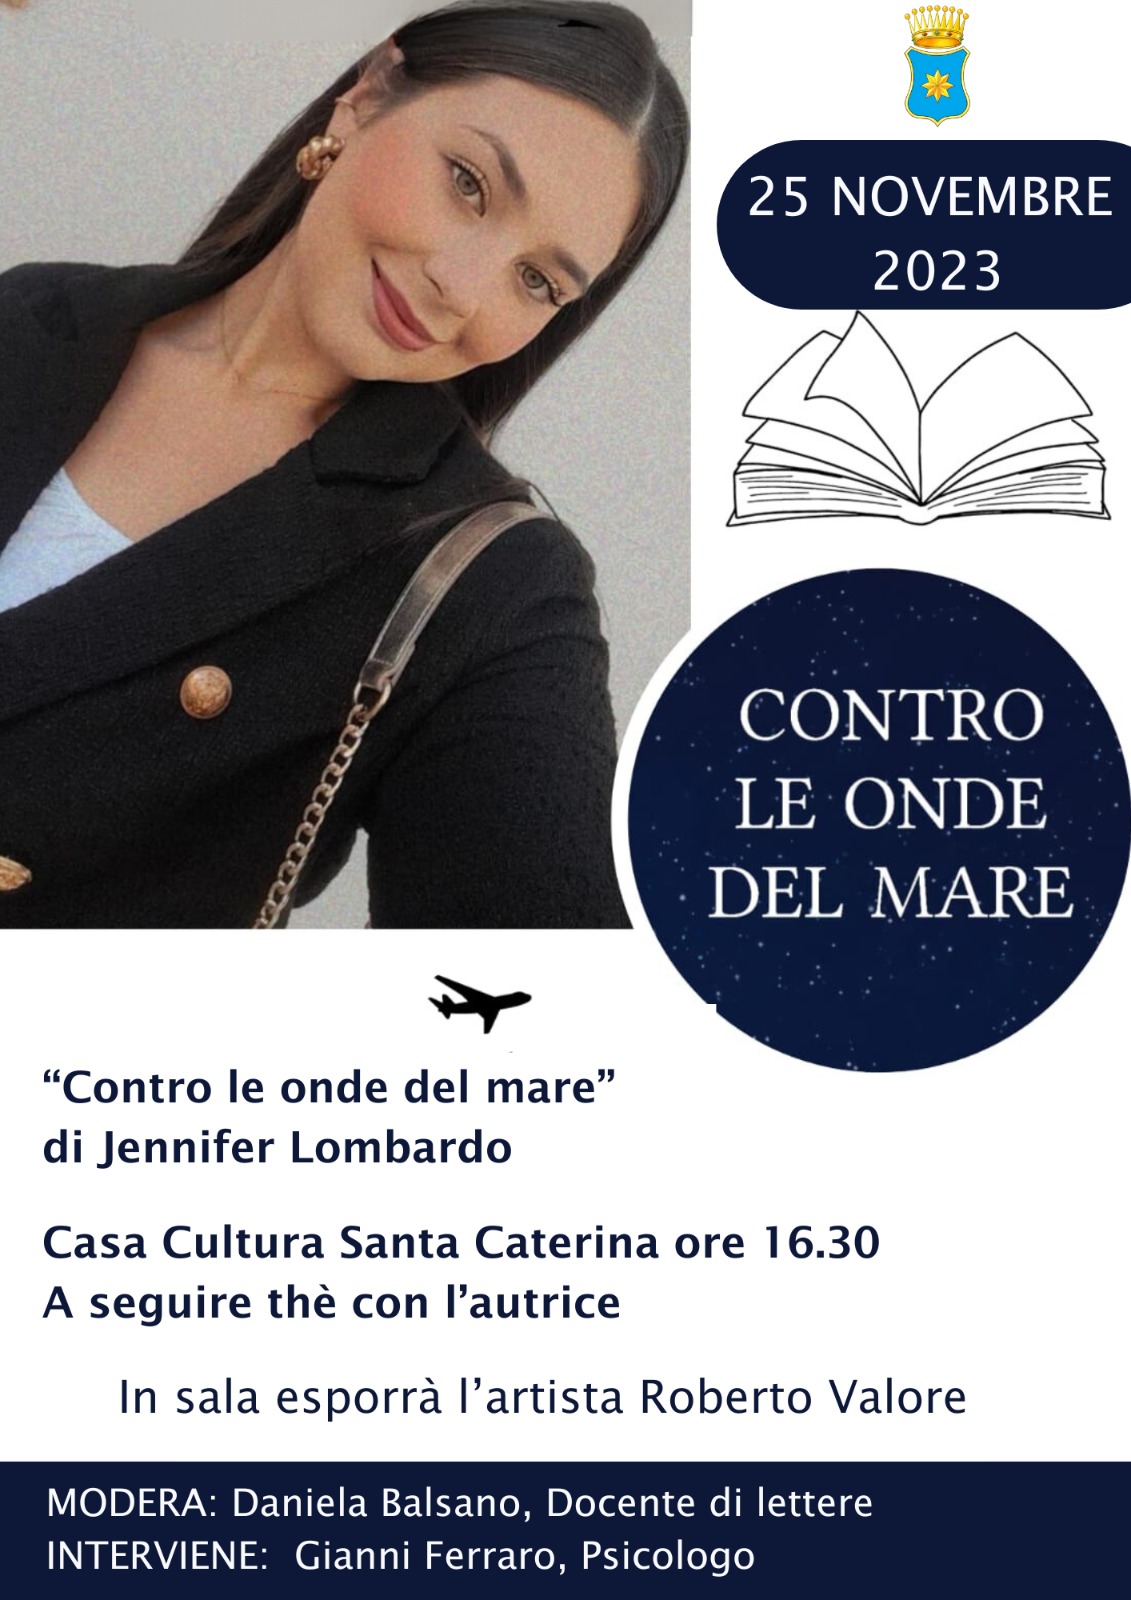 Giornata contro la violenza sulle donne 25 novembre: A Casa Cultura Santa Caterina si presenta”Contro le onde del mare”